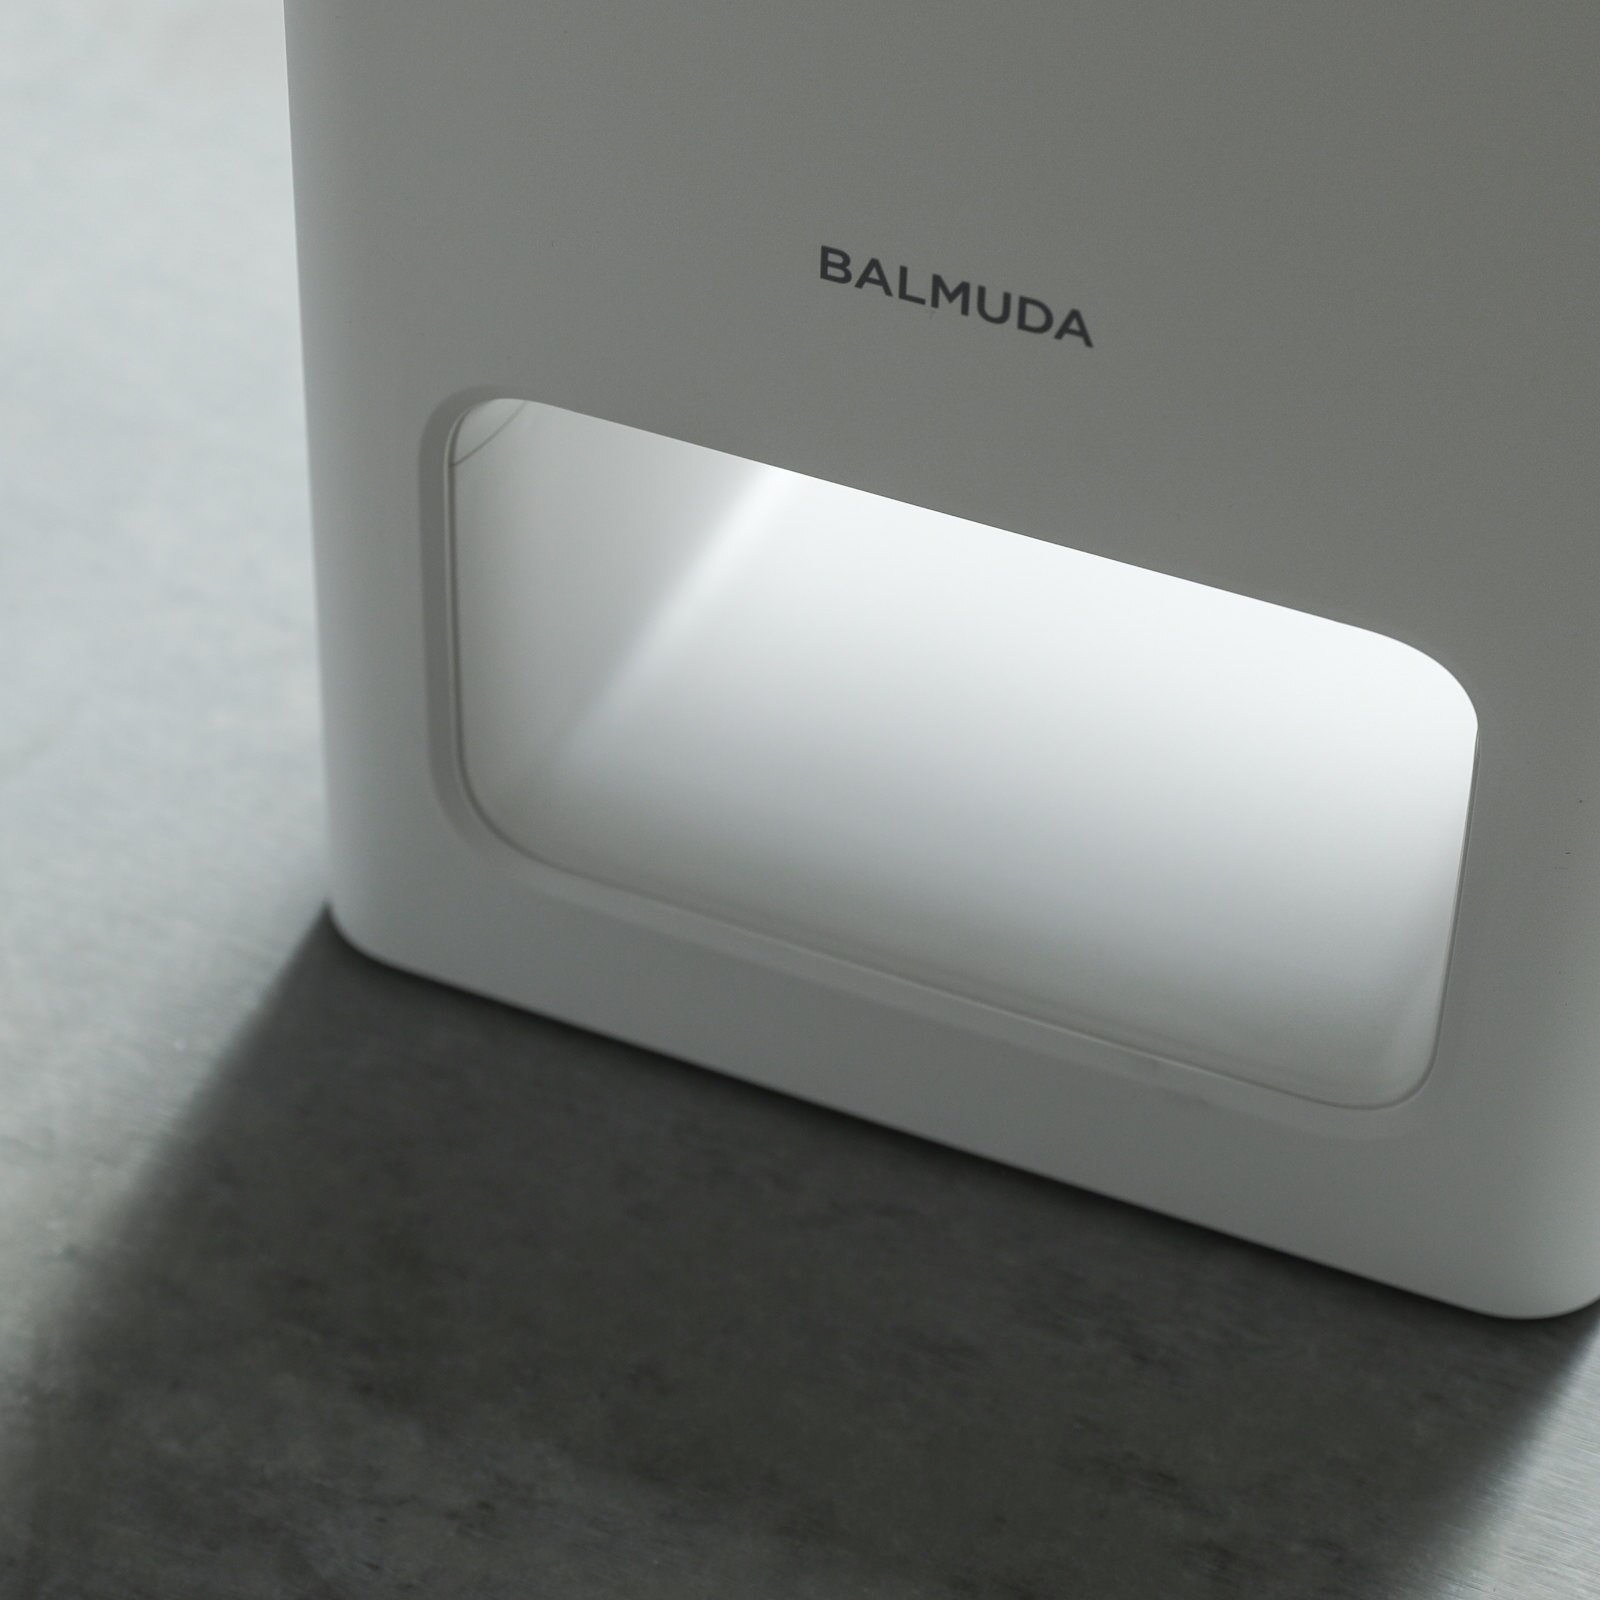 冷暖房/空調 空気清浄器 概要 | BALMUDA The Pure | バルミューダ